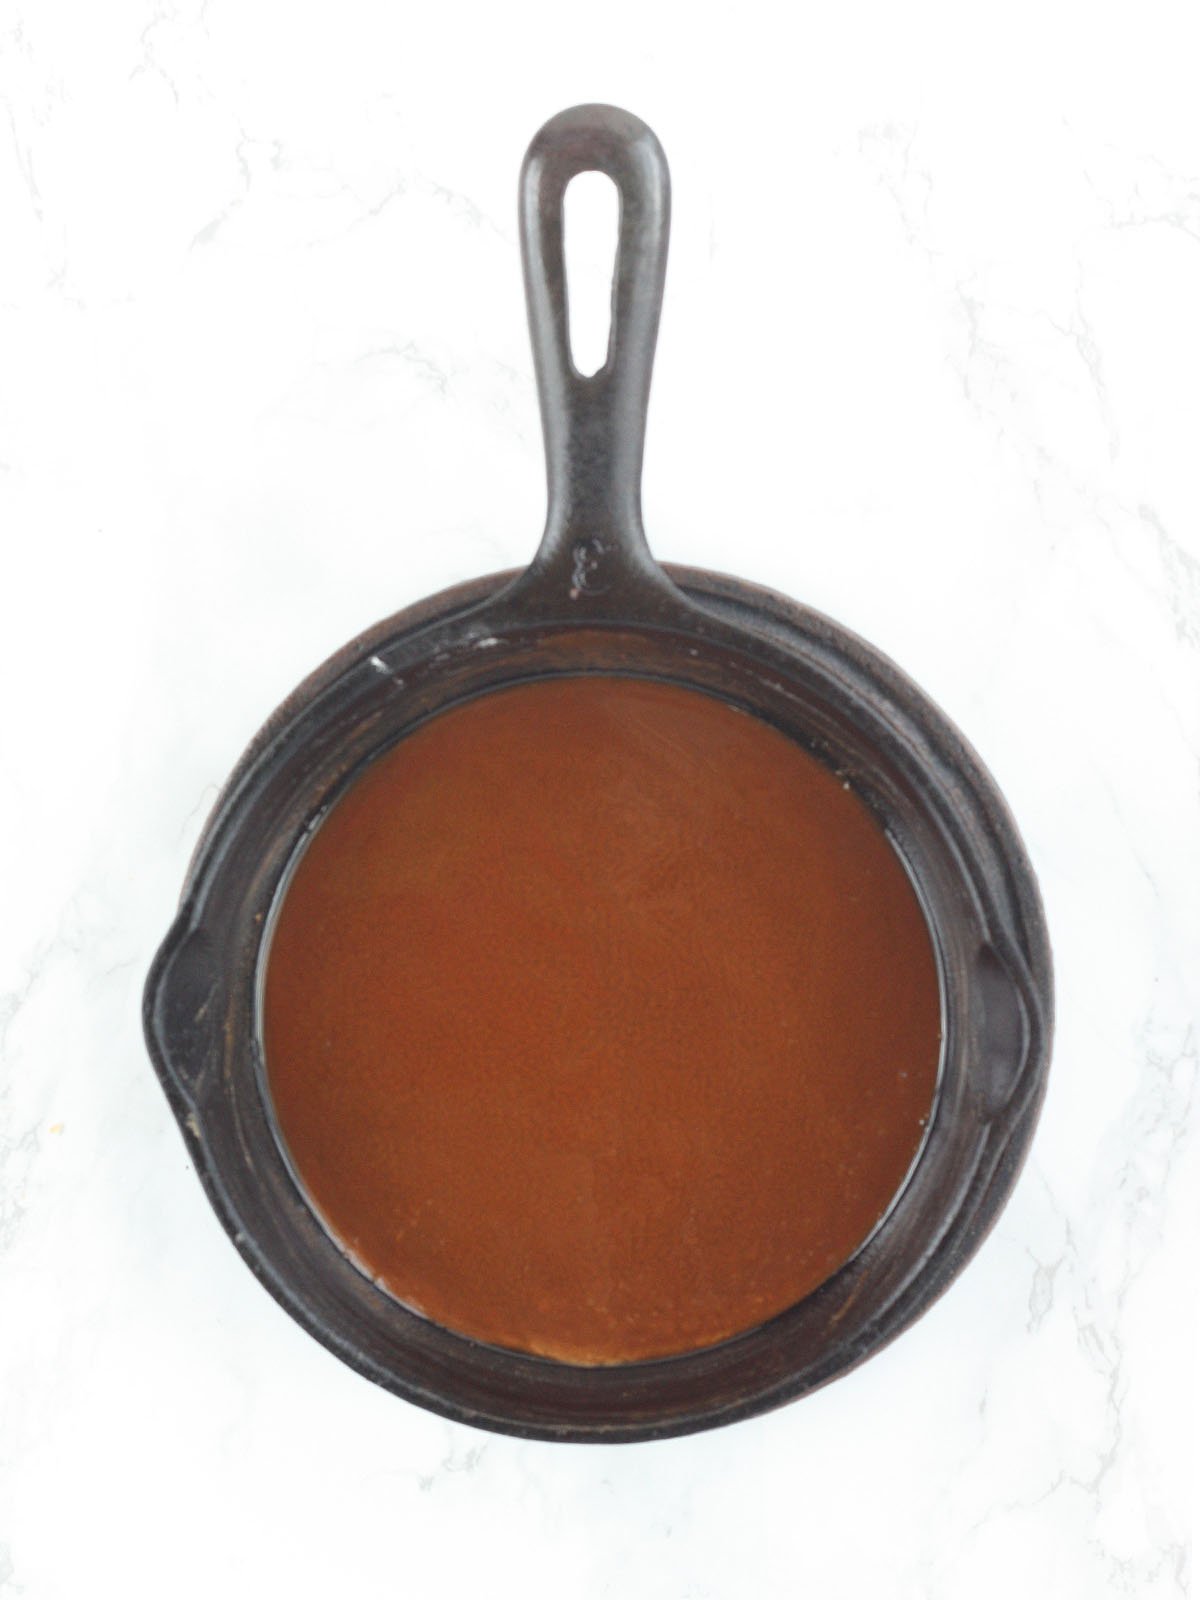 dark brown roux in a cast iron skillet